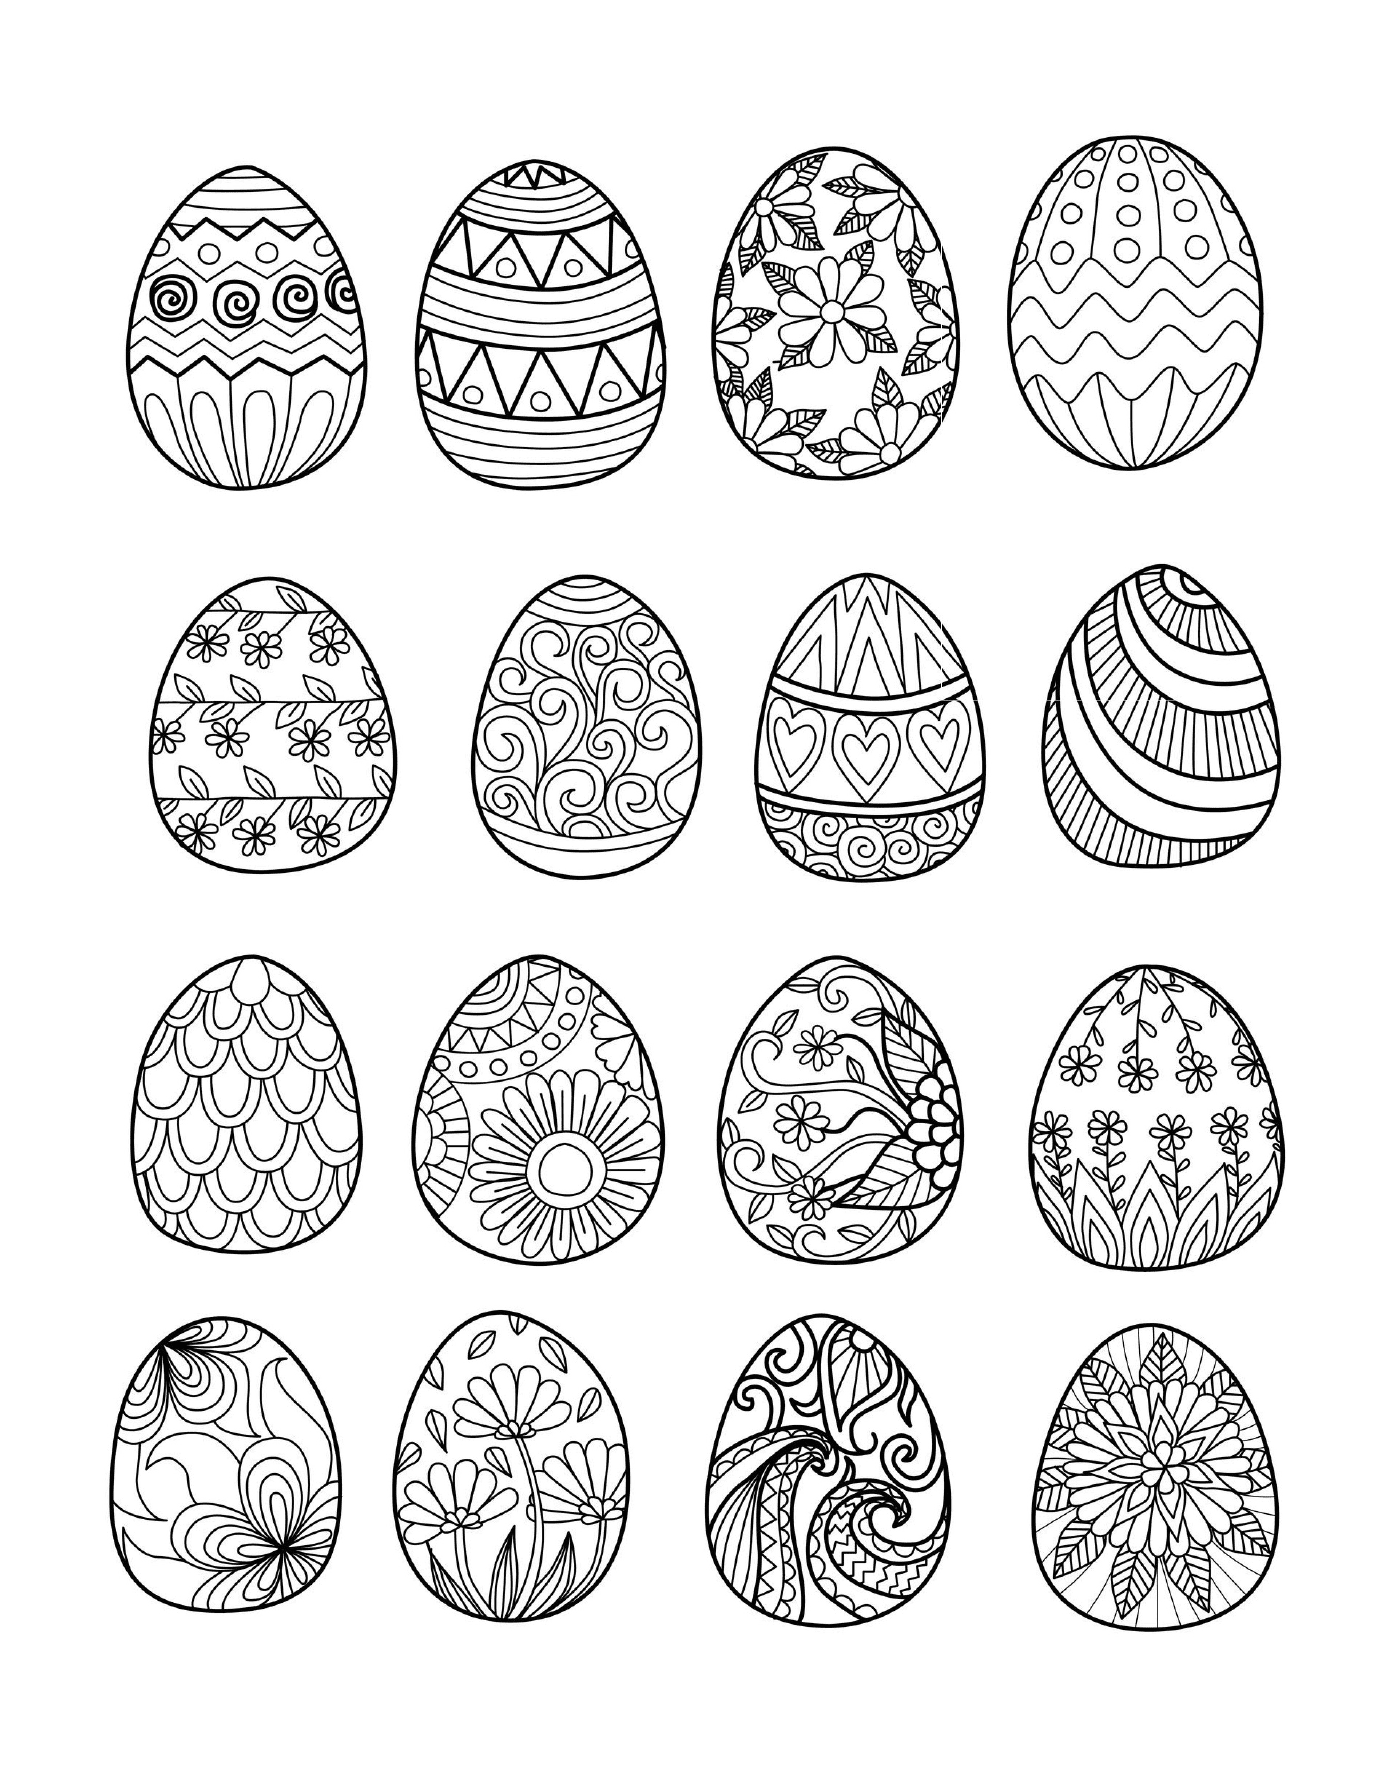  Huevos de Pascua para adultos 2 by Bimdeedee, un juego de huevos de colores 